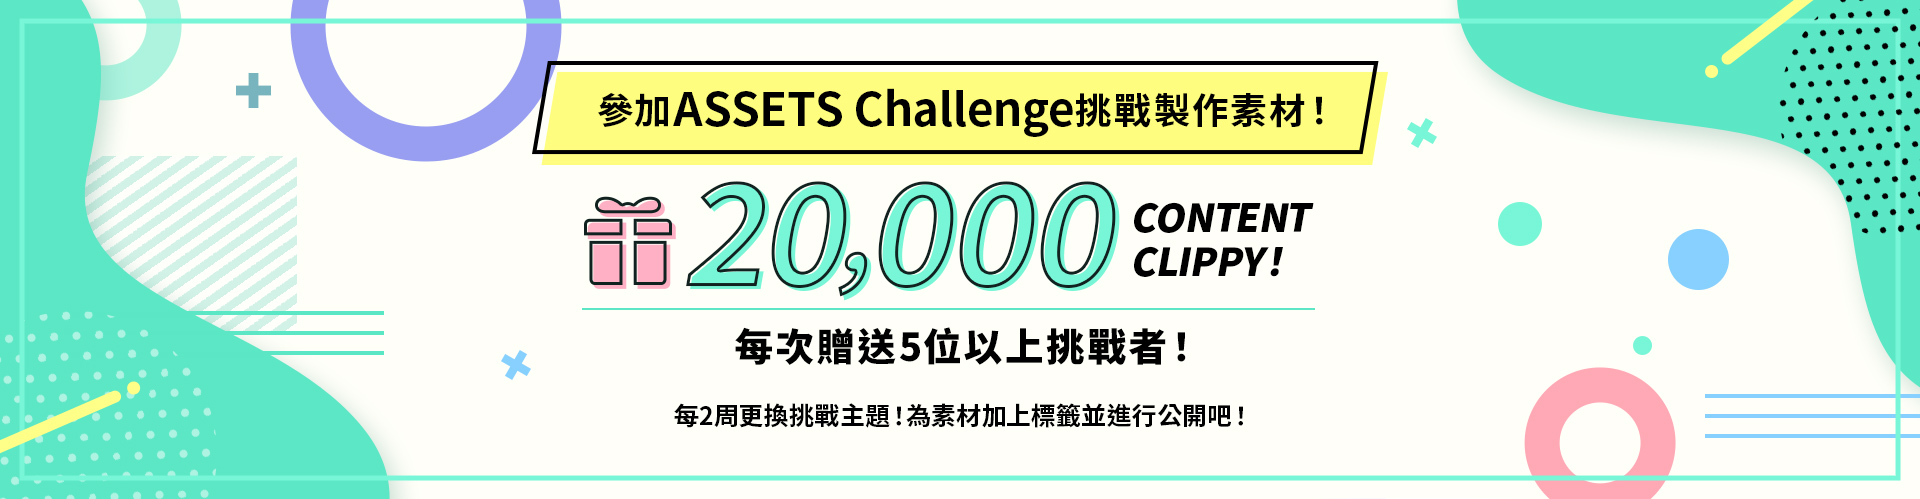 參加ASSETS挑戰製作素材！每次贈送5位以上挑戰者20,000 CONTENT CLIPPY！每2個禮拜會更換挑戰主題！為素材加上標籤並進行公開吧！